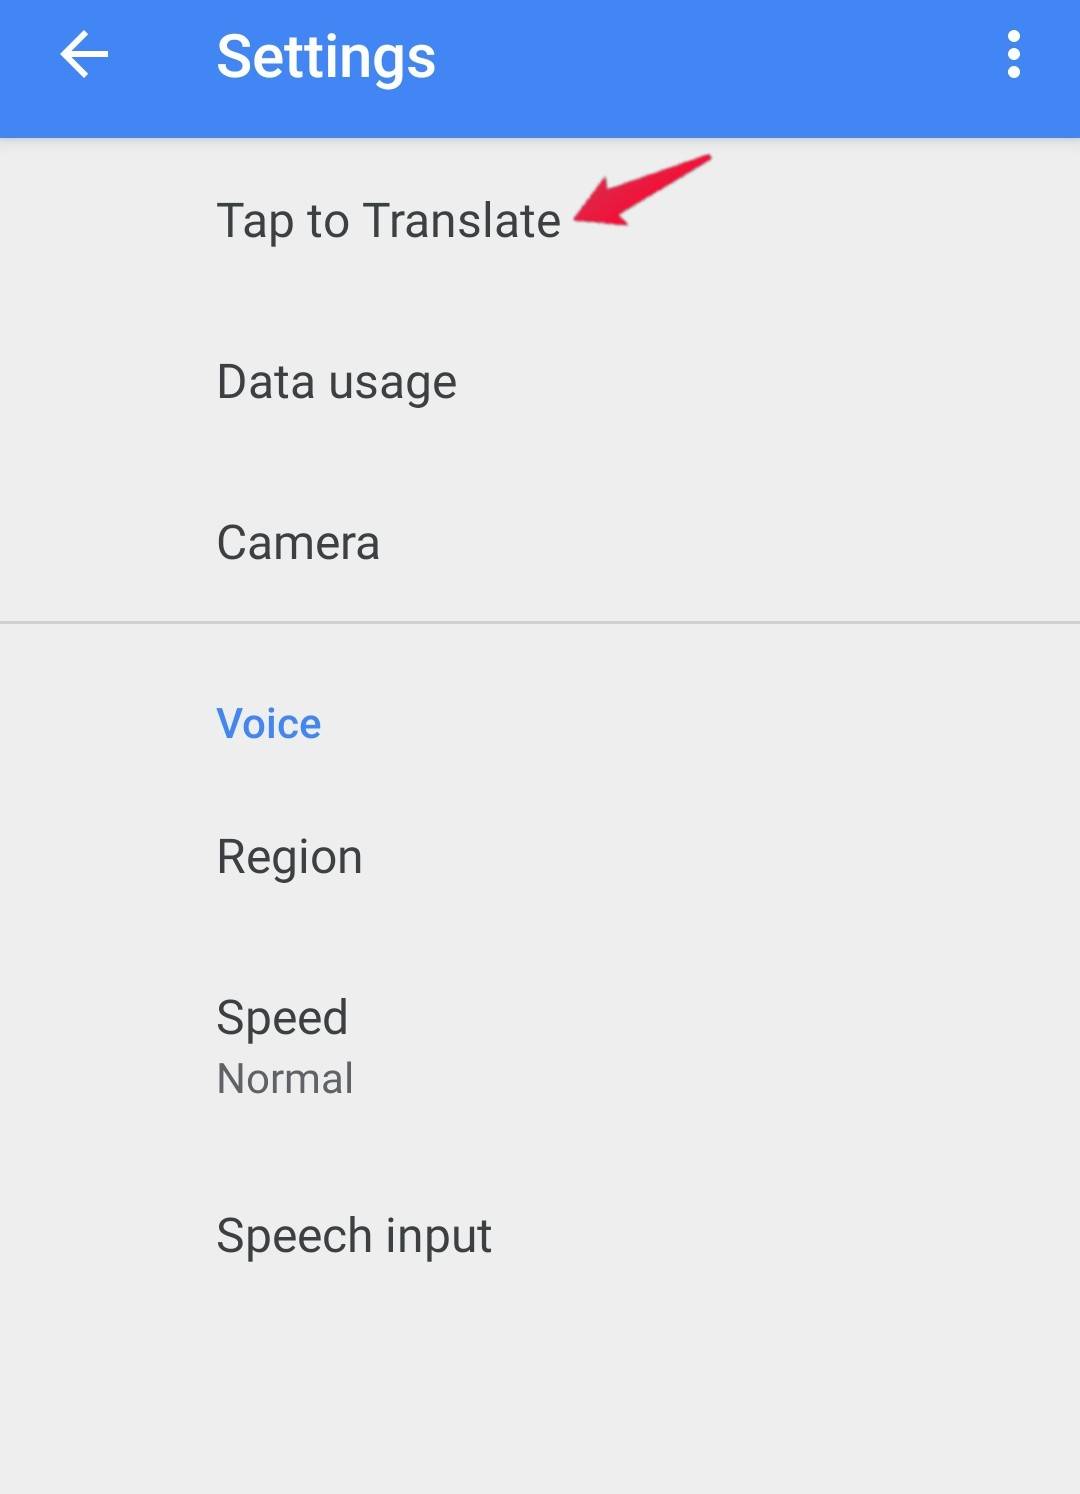 如何翻译 Android 上的任何应用程序？